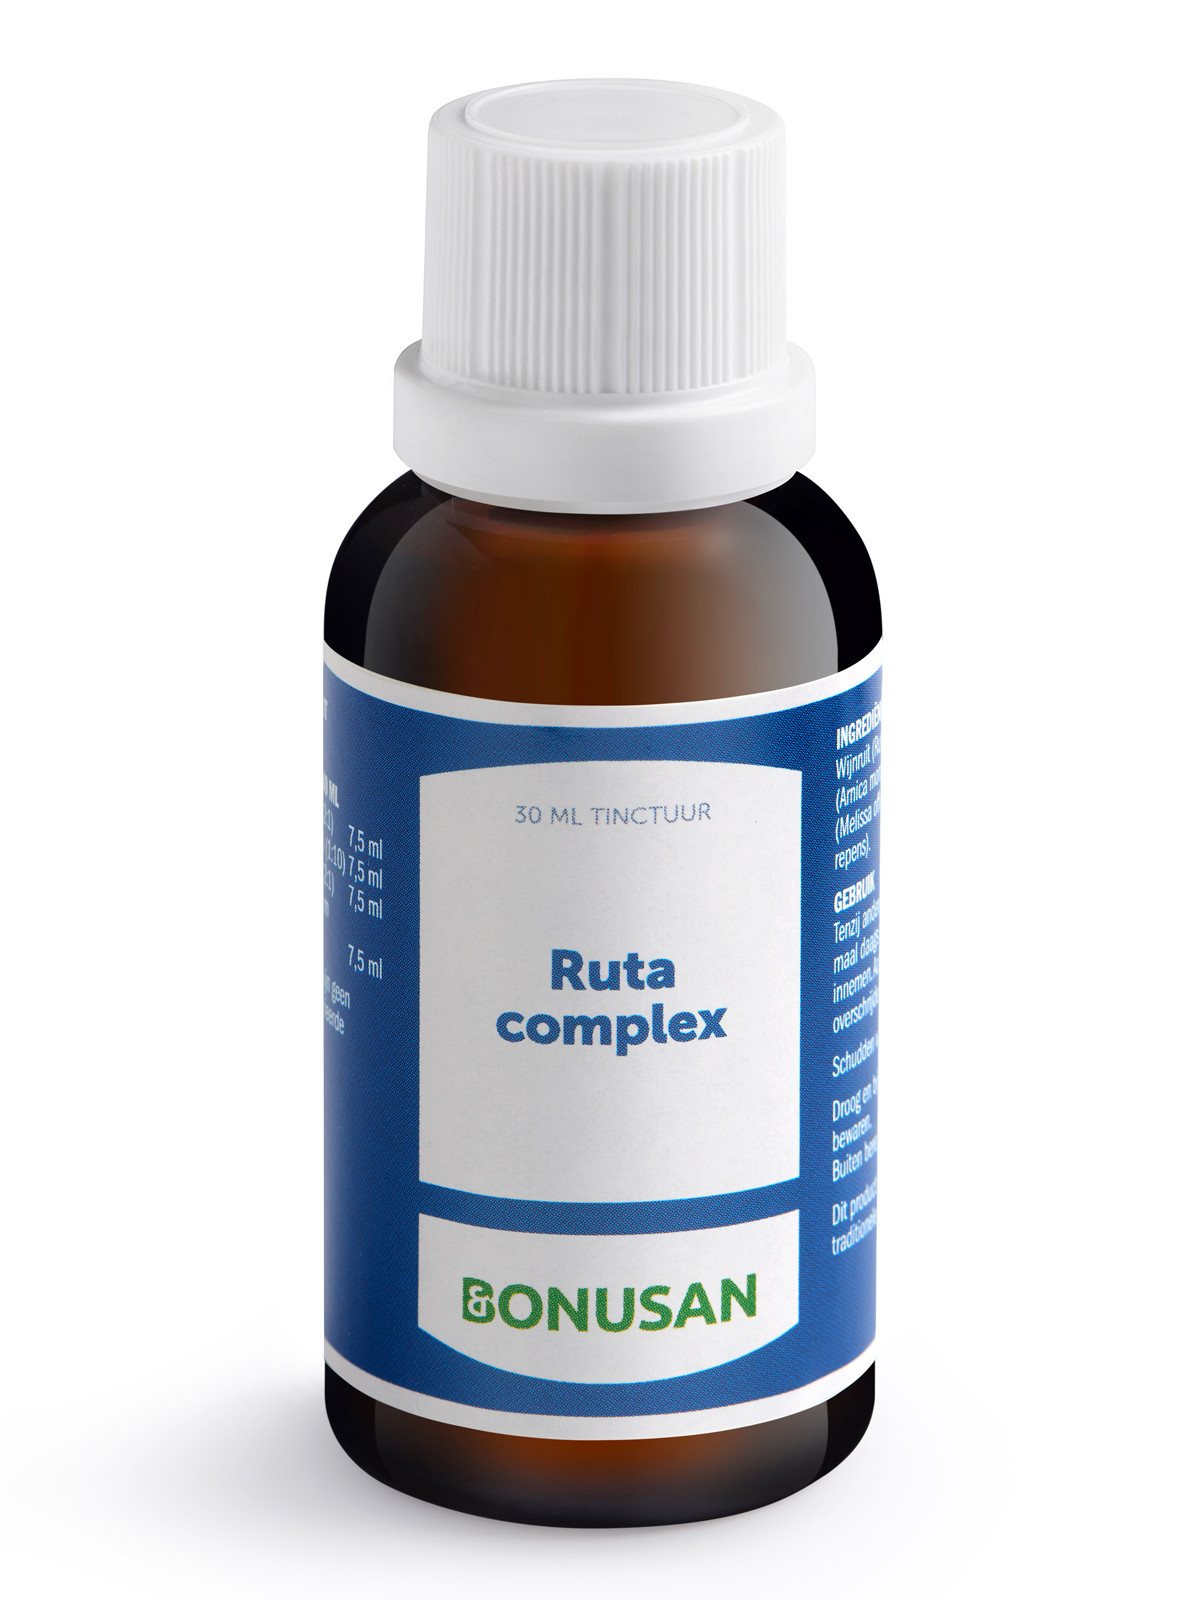 Bonusan - Ruta complex (binnenkort uit assortiment)